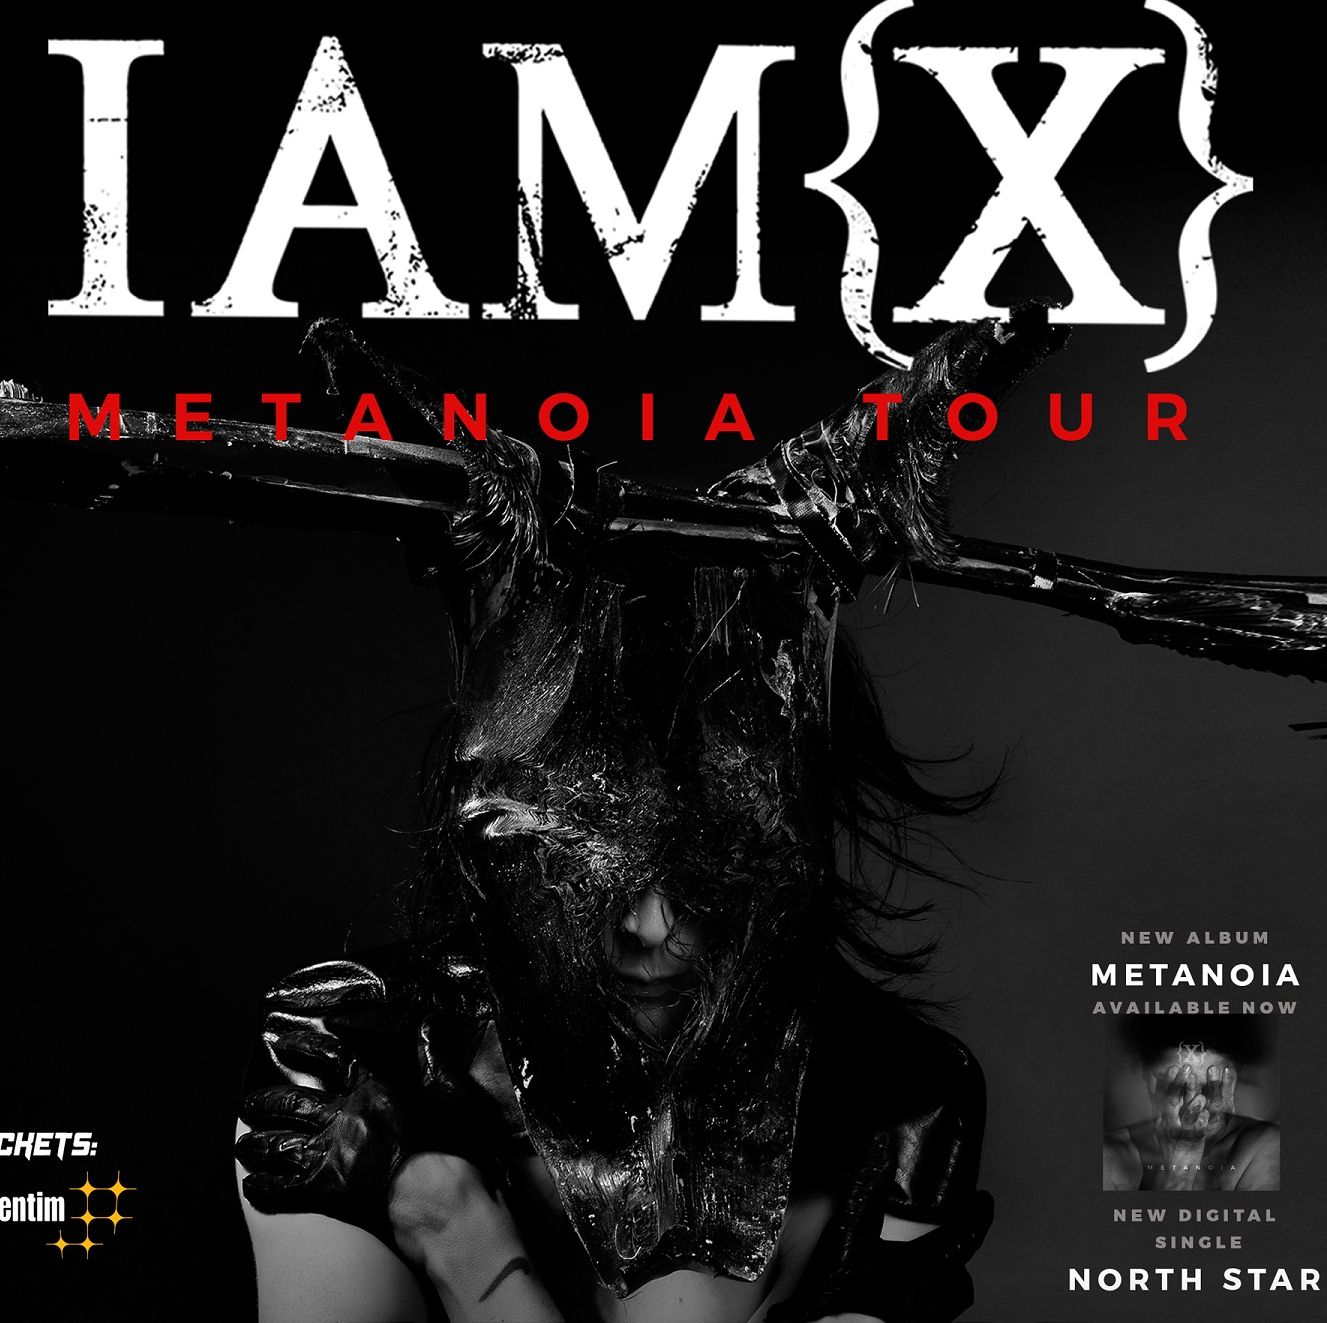 IAMX ще гостува в София на 16 март